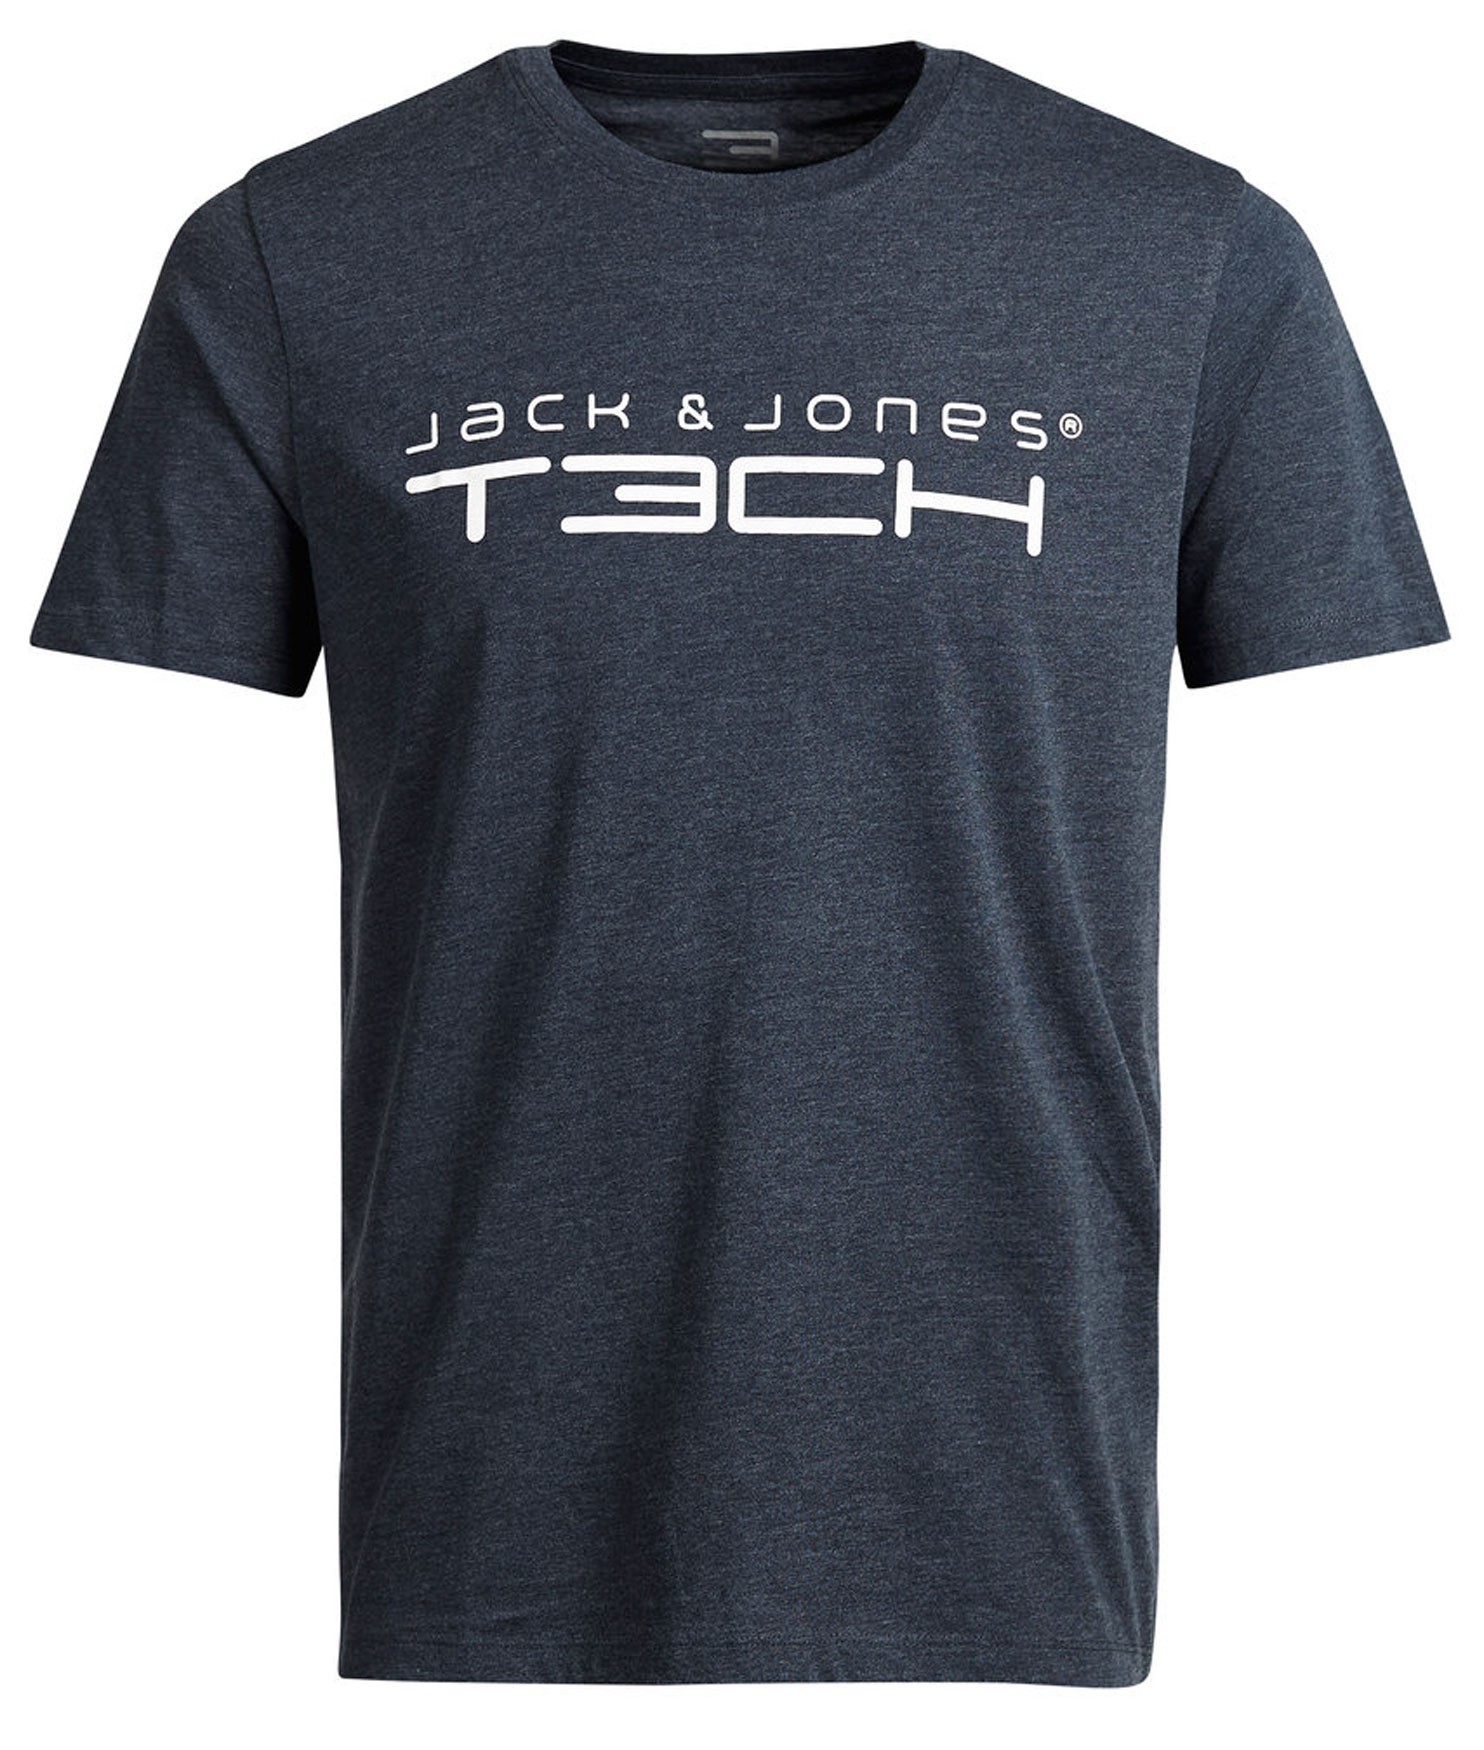 Plutosport - Jack & Jones T3ch Foam T-shirt Heren